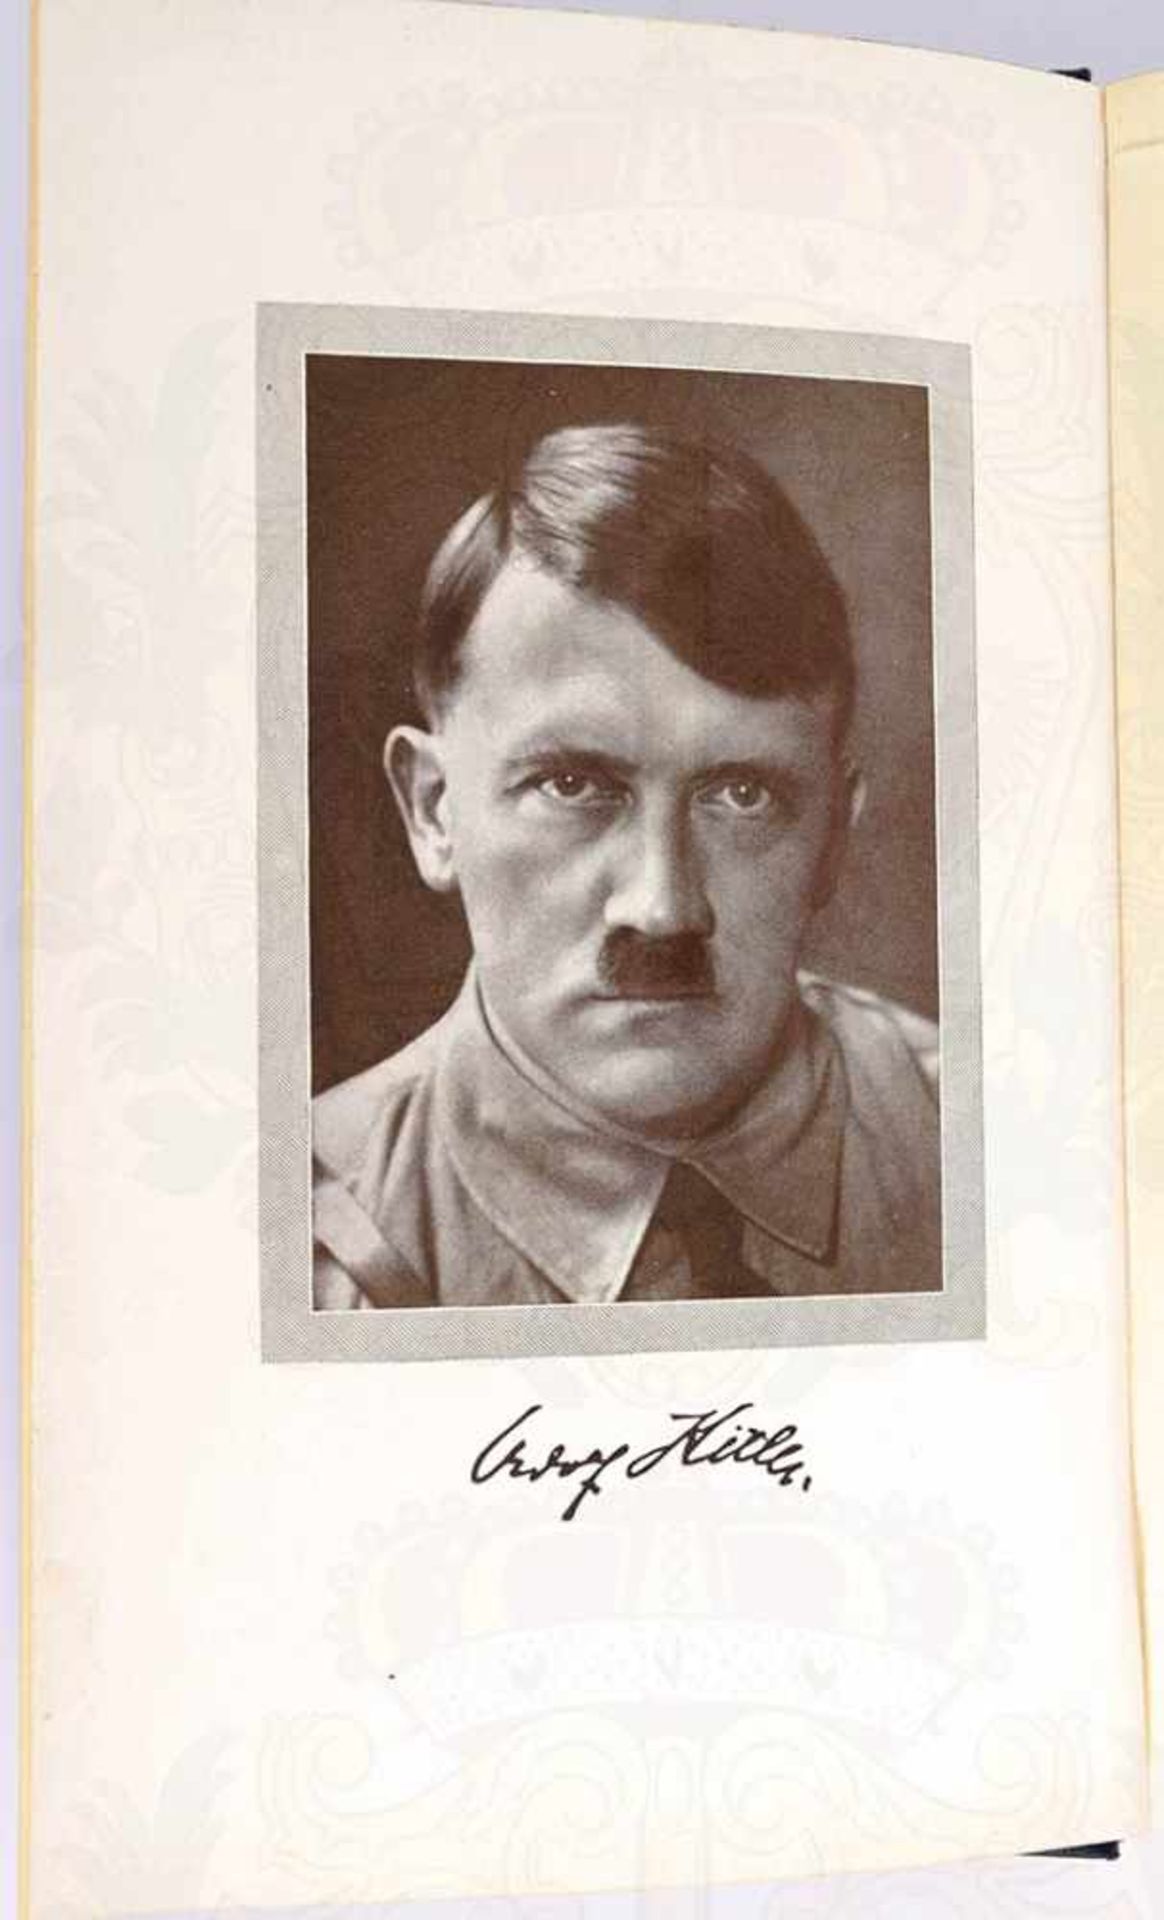 MEIN KAMPF, von Adolf Hitler, Volksausgabe, Zentralverlag der NSDAP, München 1939, 781 S., 1 - Bild 2 aus 3